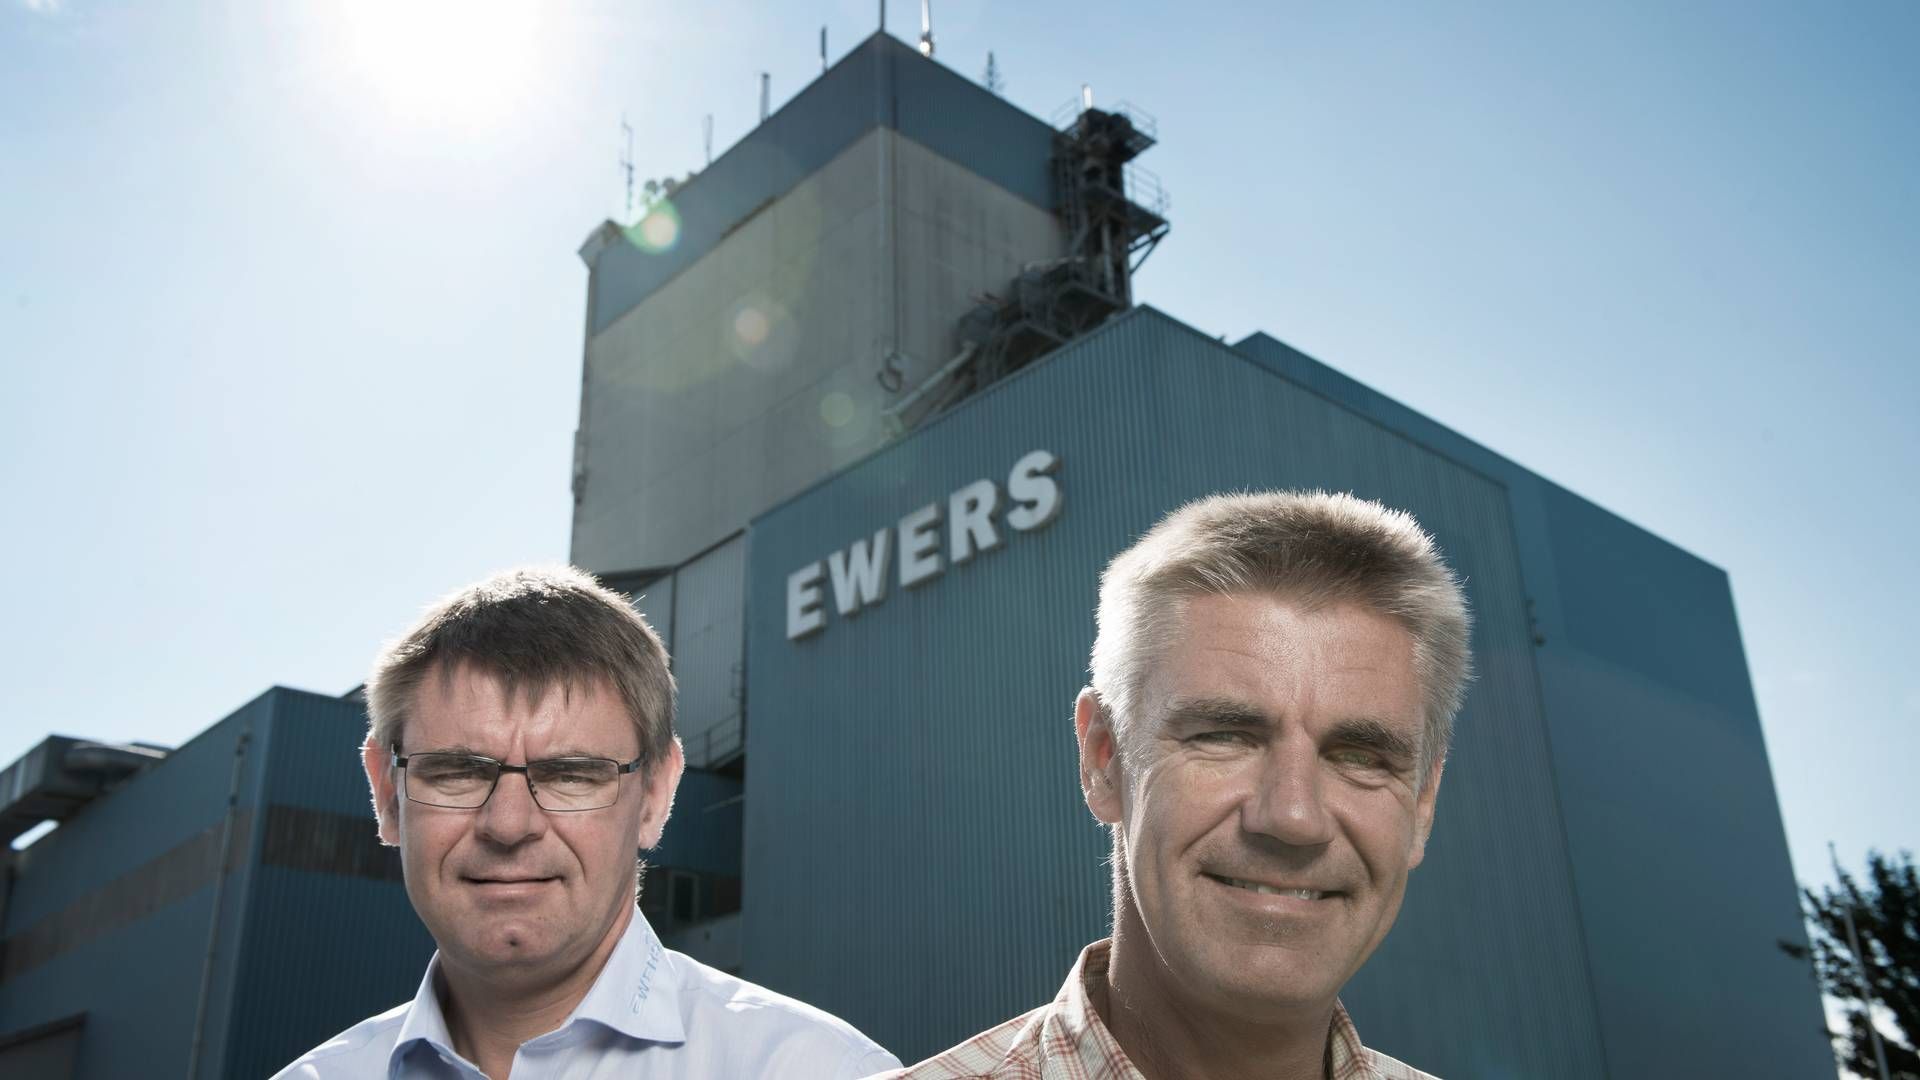 Hans Otto og Claus Ewers har taget de første skridt til at indføre syvende generation i grovvarevirksomheden fra Sønderborg. | Foto: Joachim Ladefoged